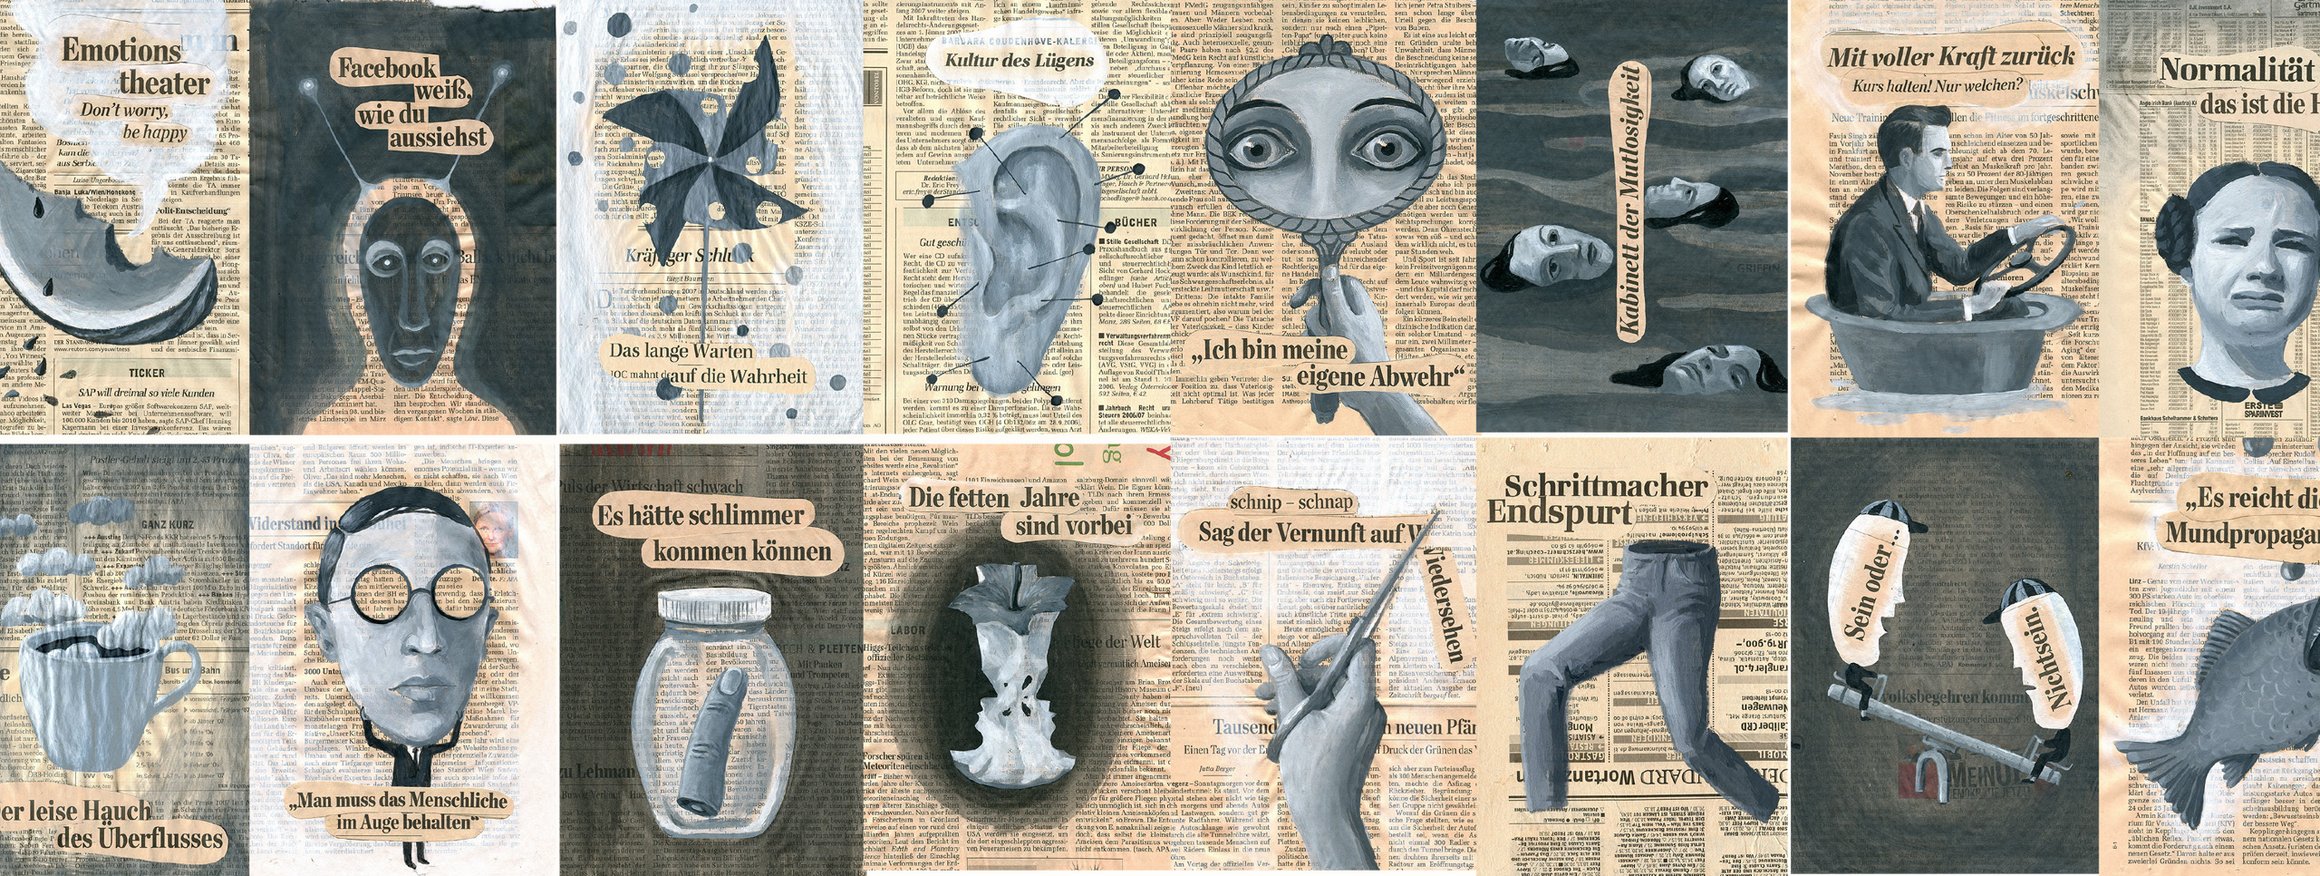 Die Collagen zeigen alte Zeitungsausschnitte mit Symbolen darauf, die extreme Irrationalität zeigen